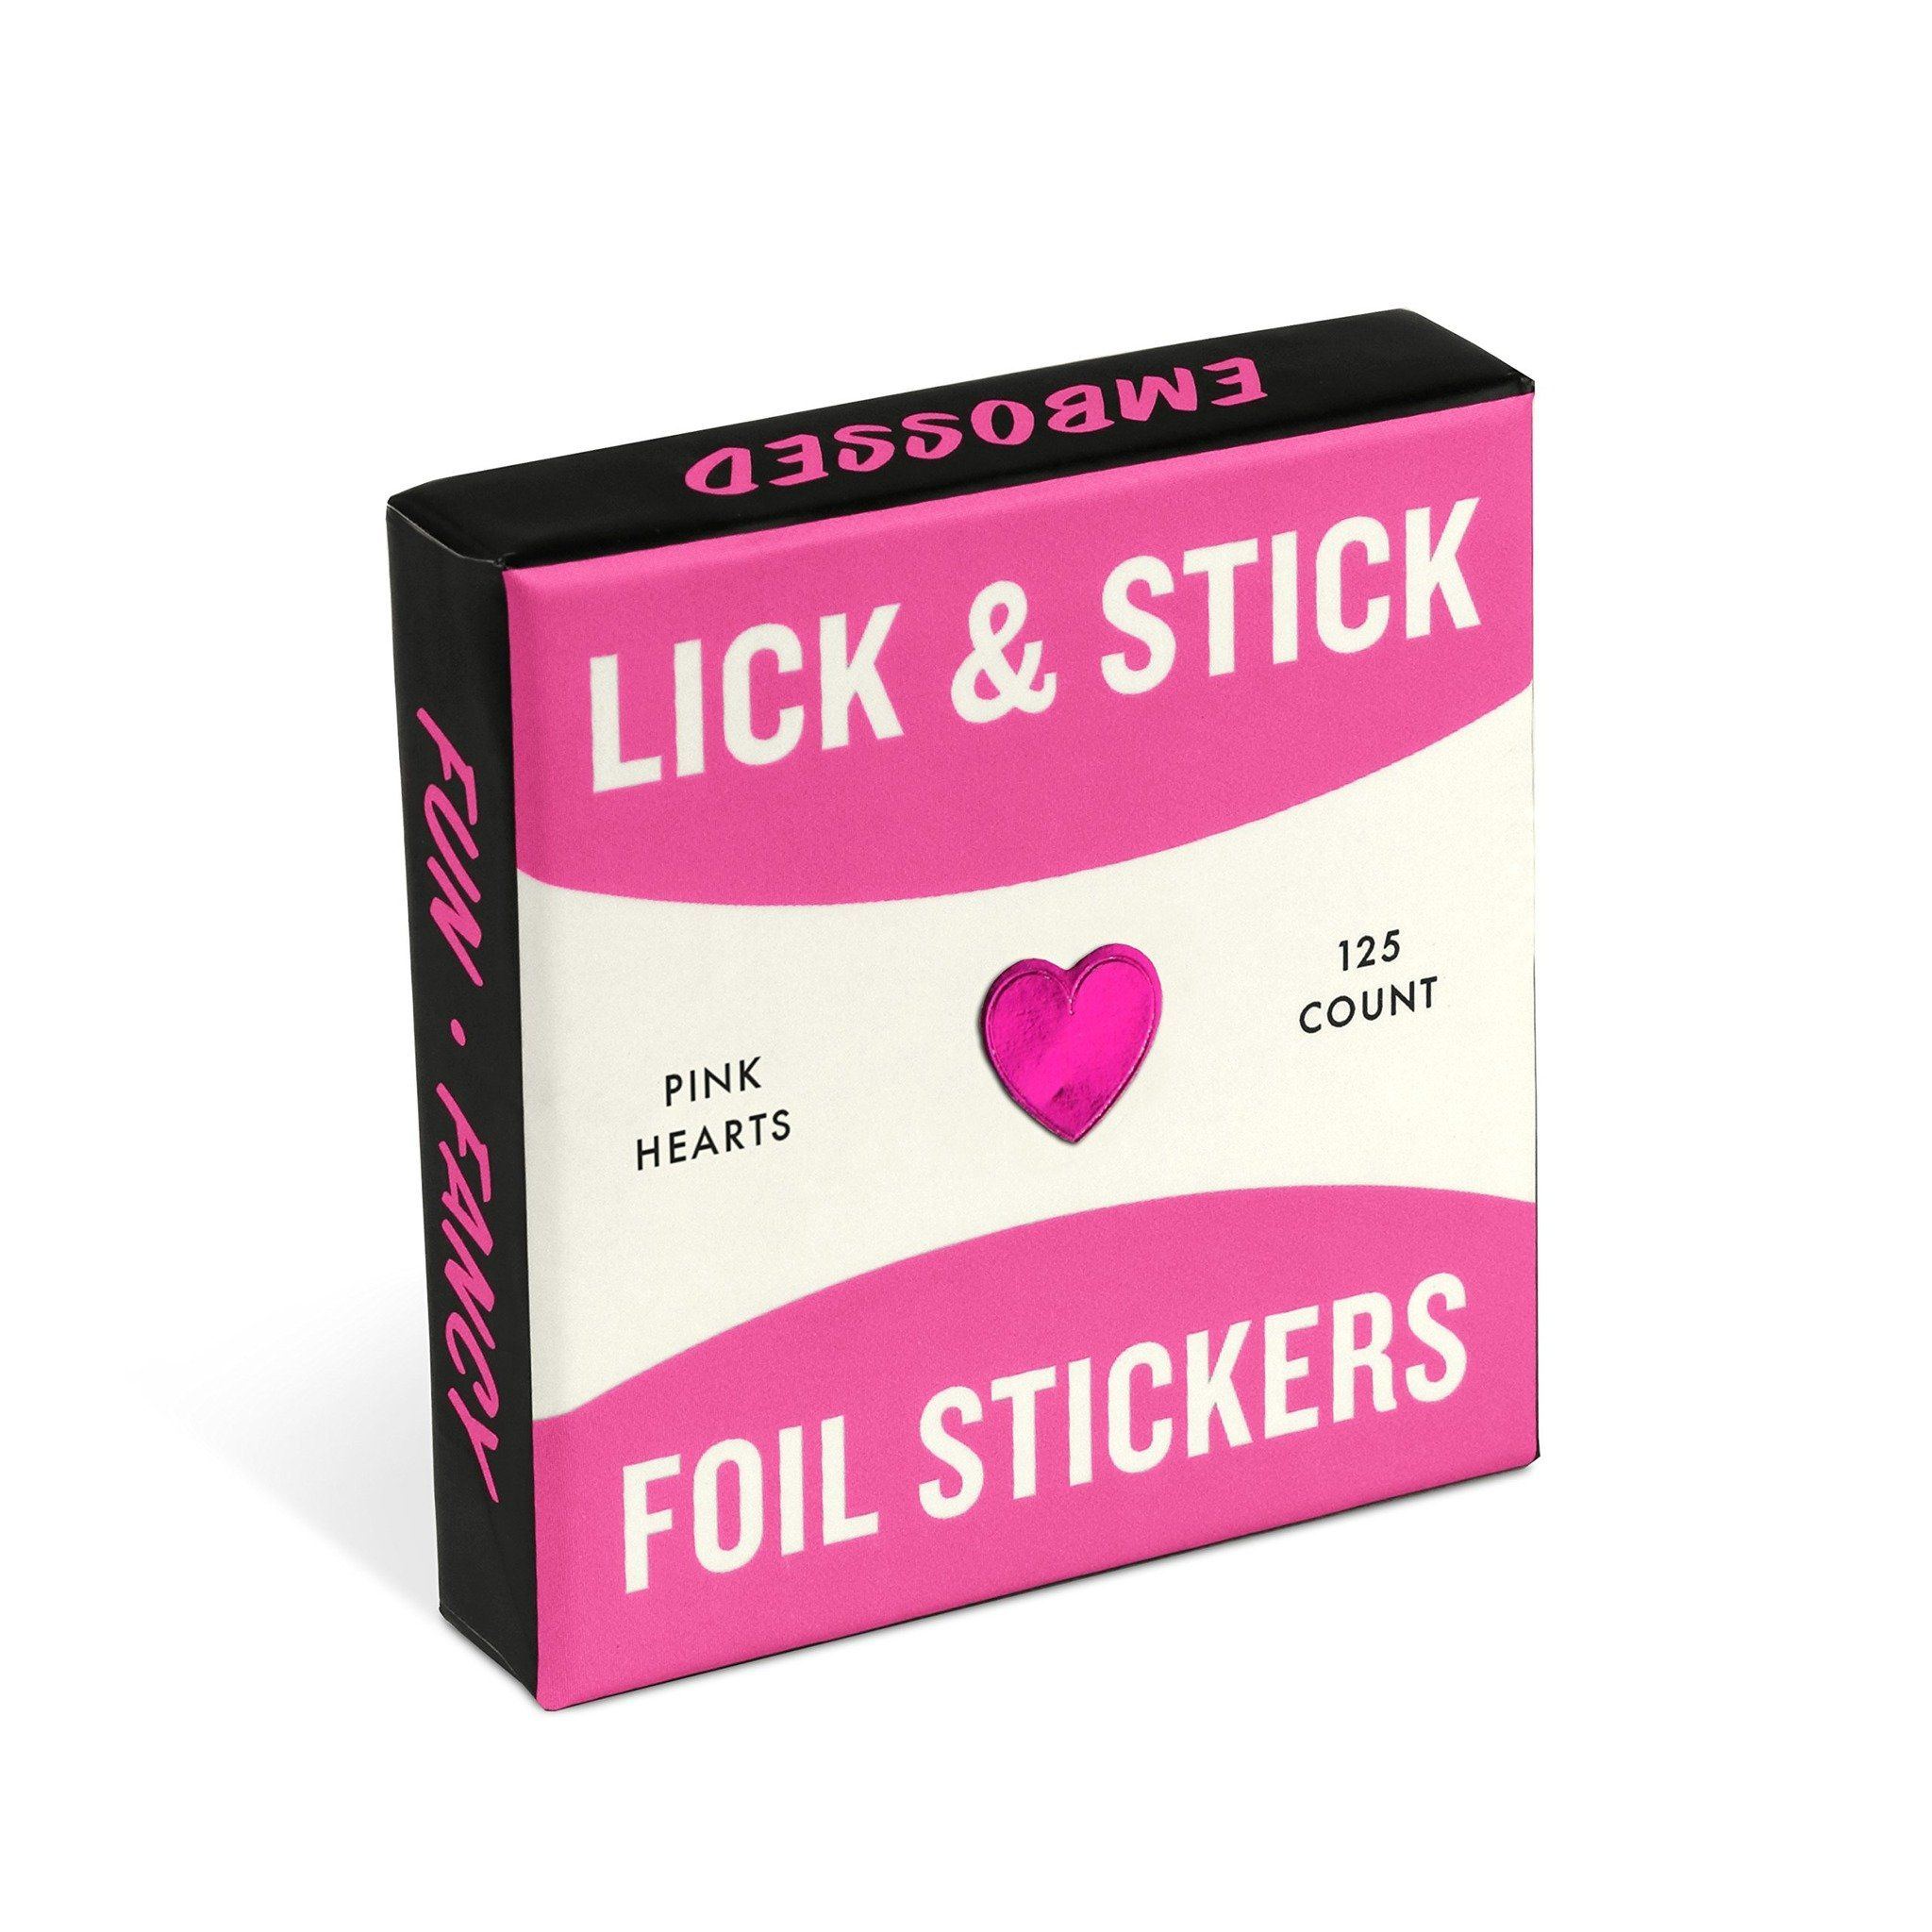 Art A. reccomend Lick a pink